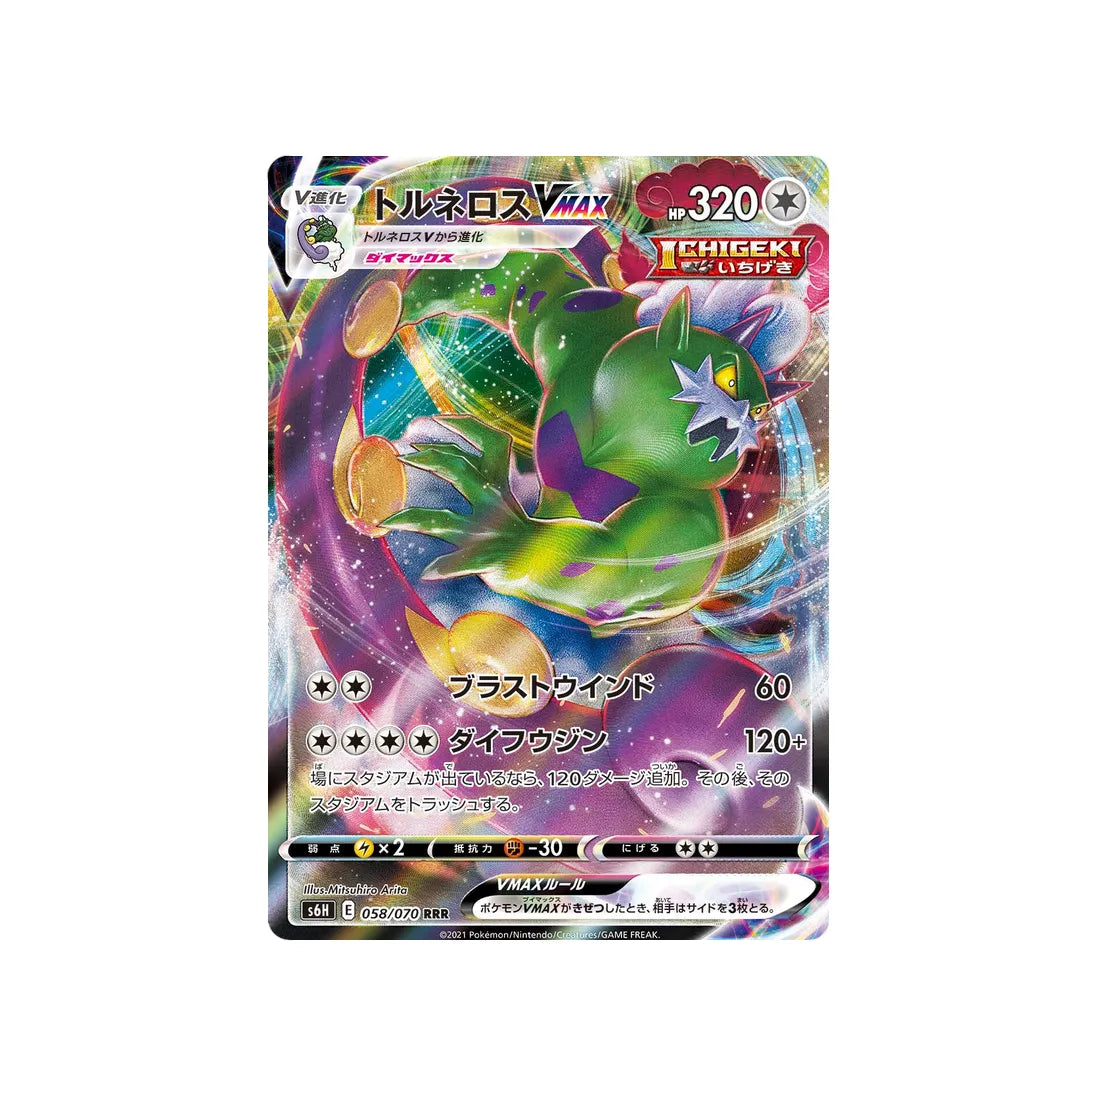 Carte Pokémon Silver Lance S6H 058/070: Boréas Vmax